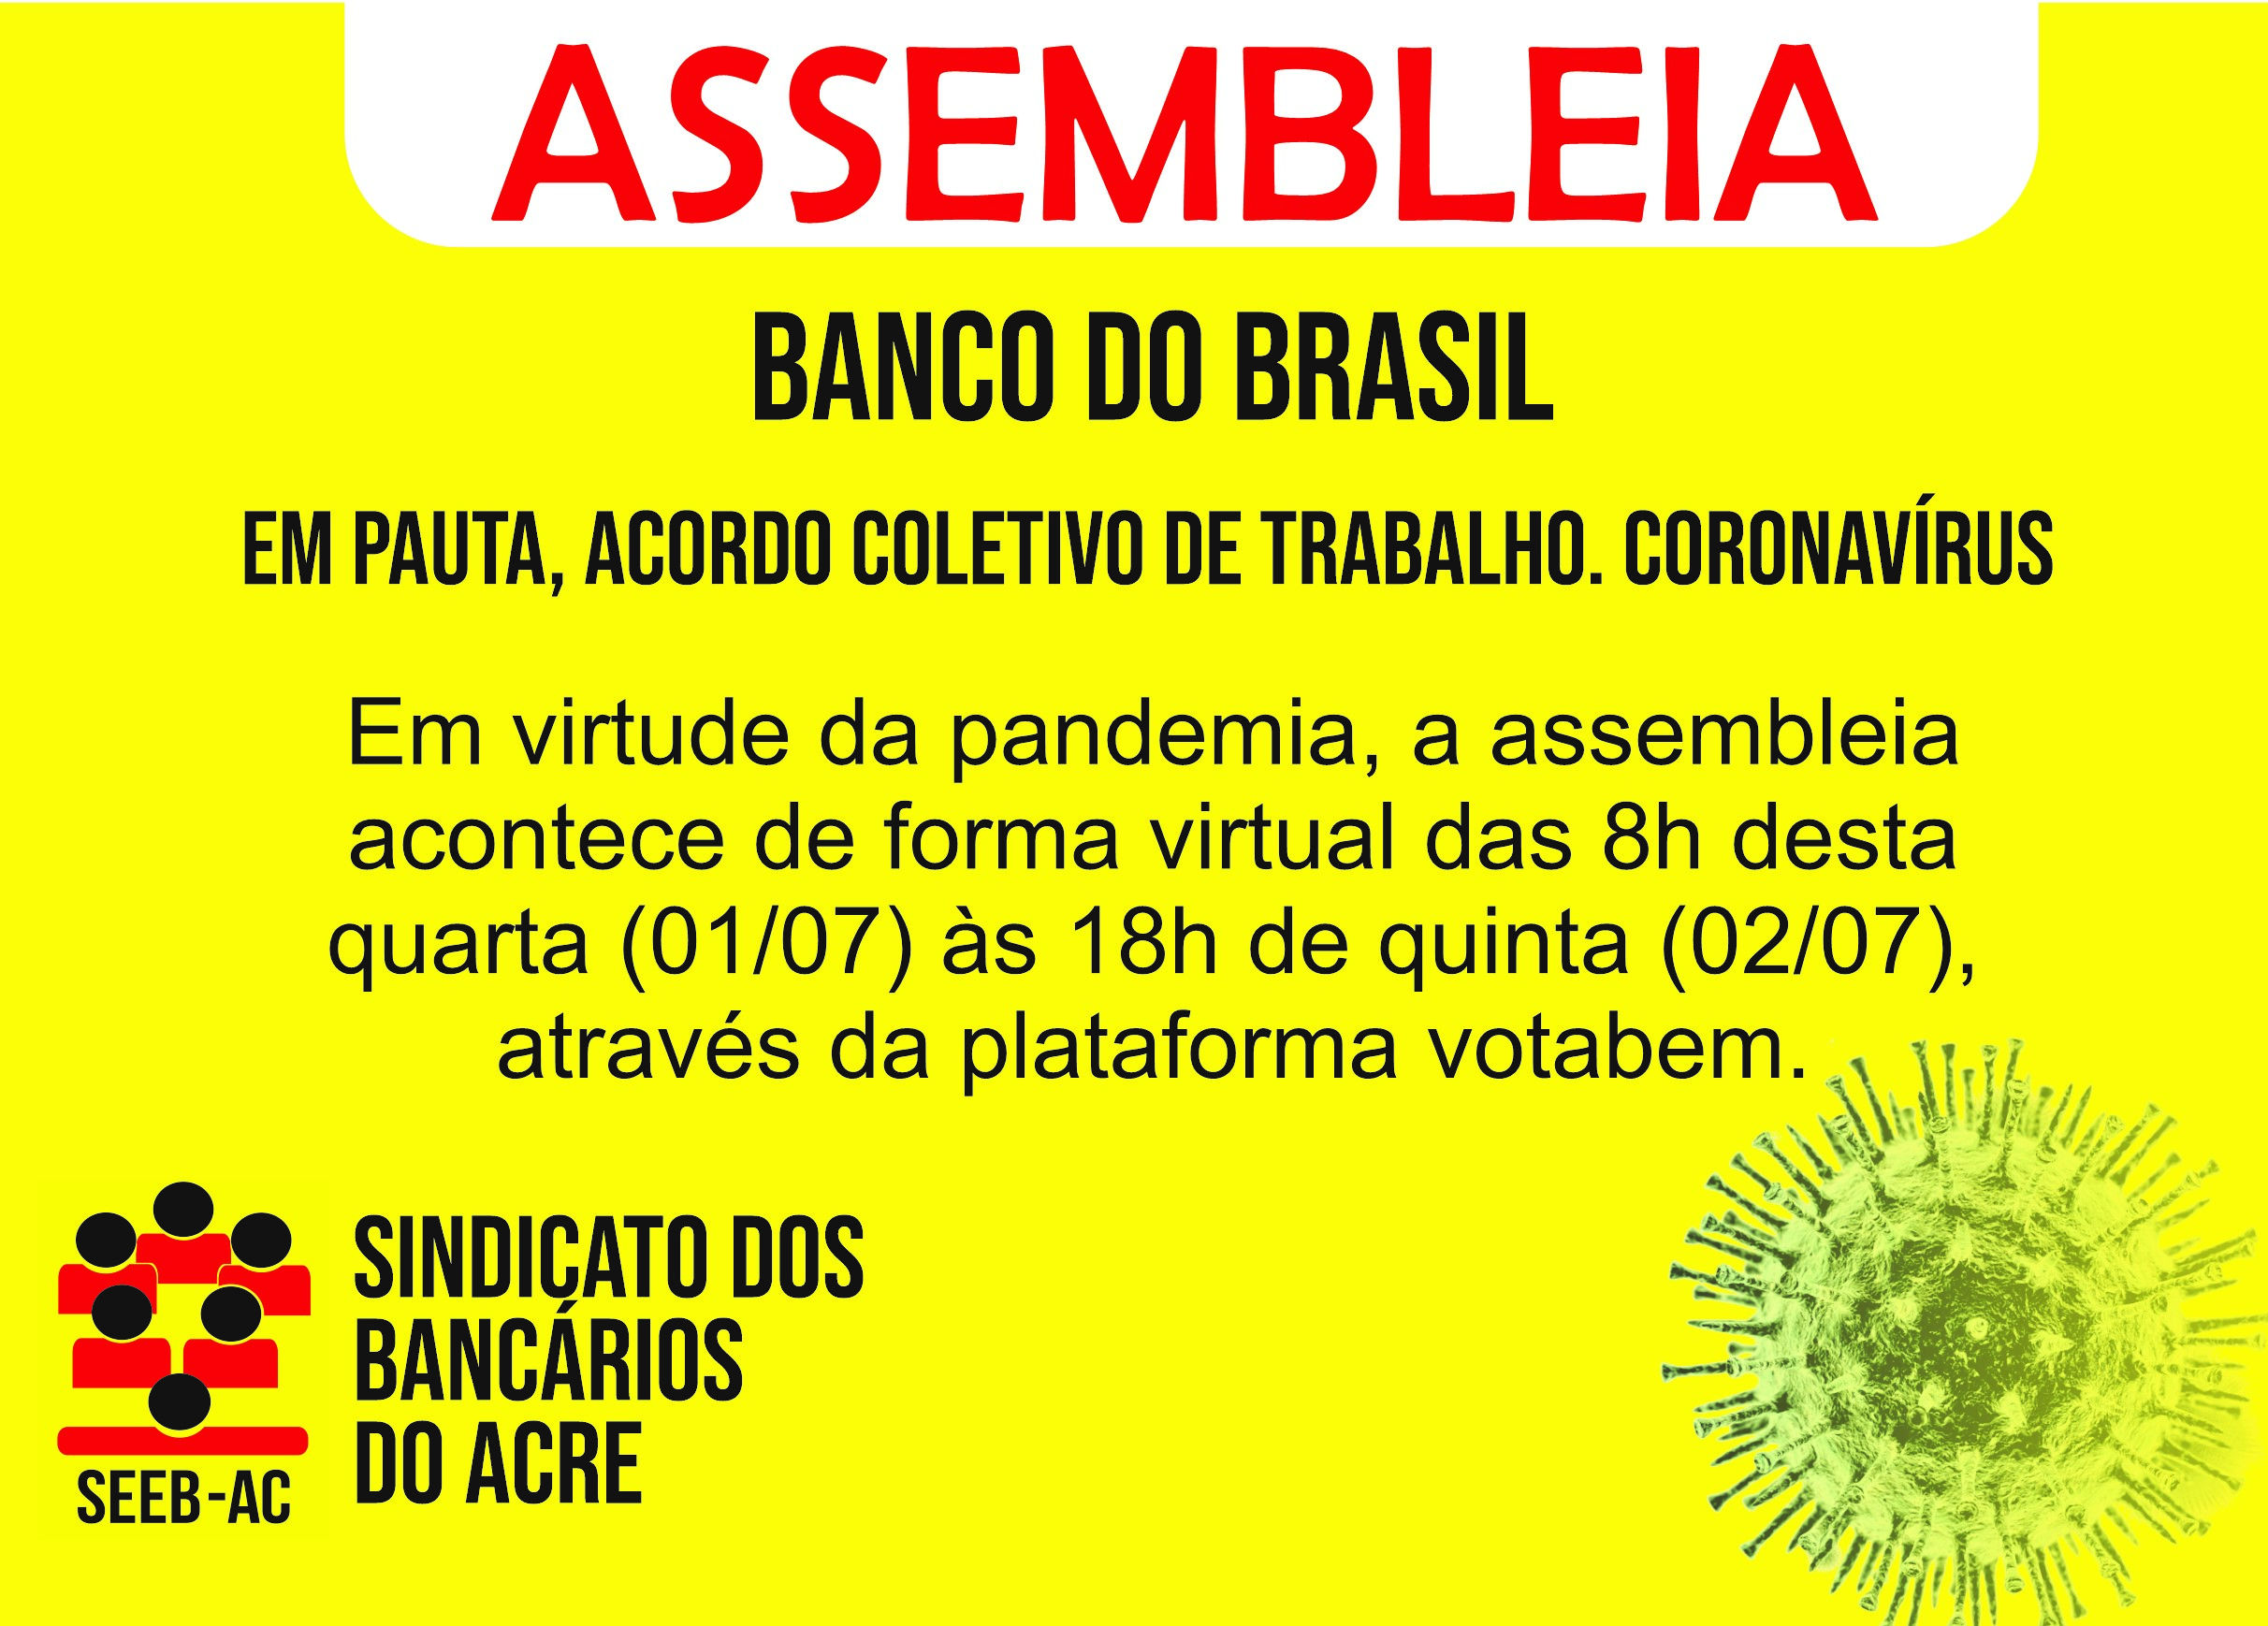 Você está visualizando atualmente Assembleia do Banco do Brasil